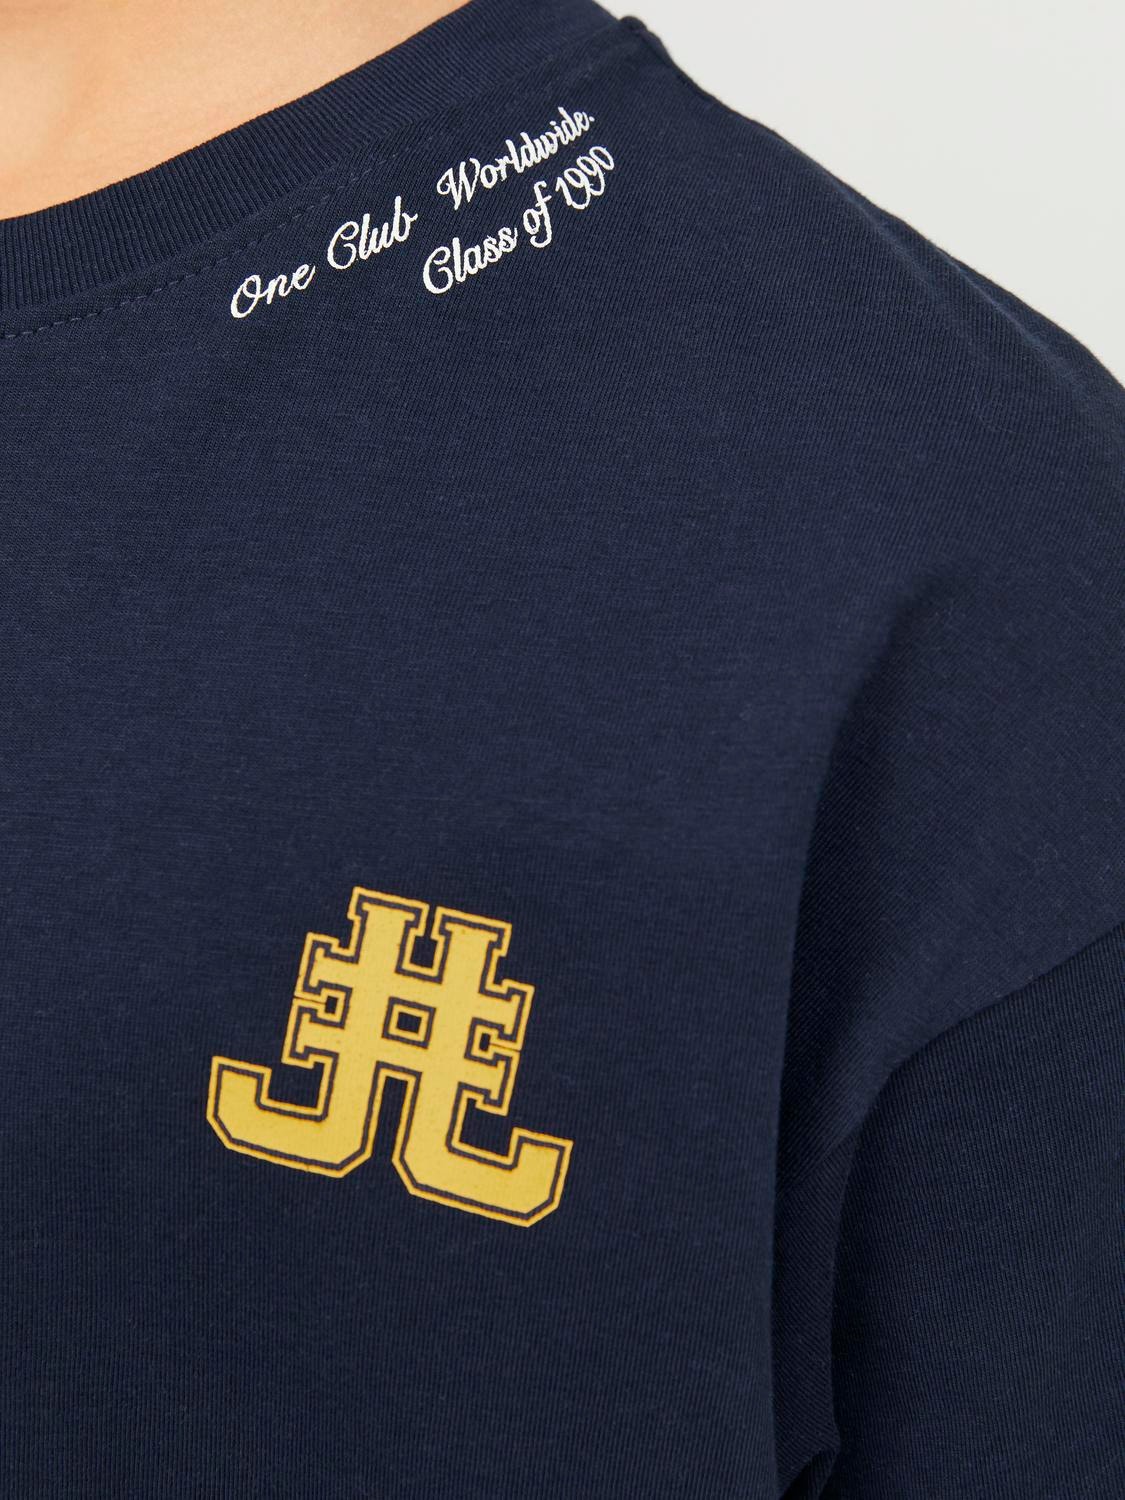 Jack & Jones T-shirt Estampar Para meninos -Navy Blazer - 12254238